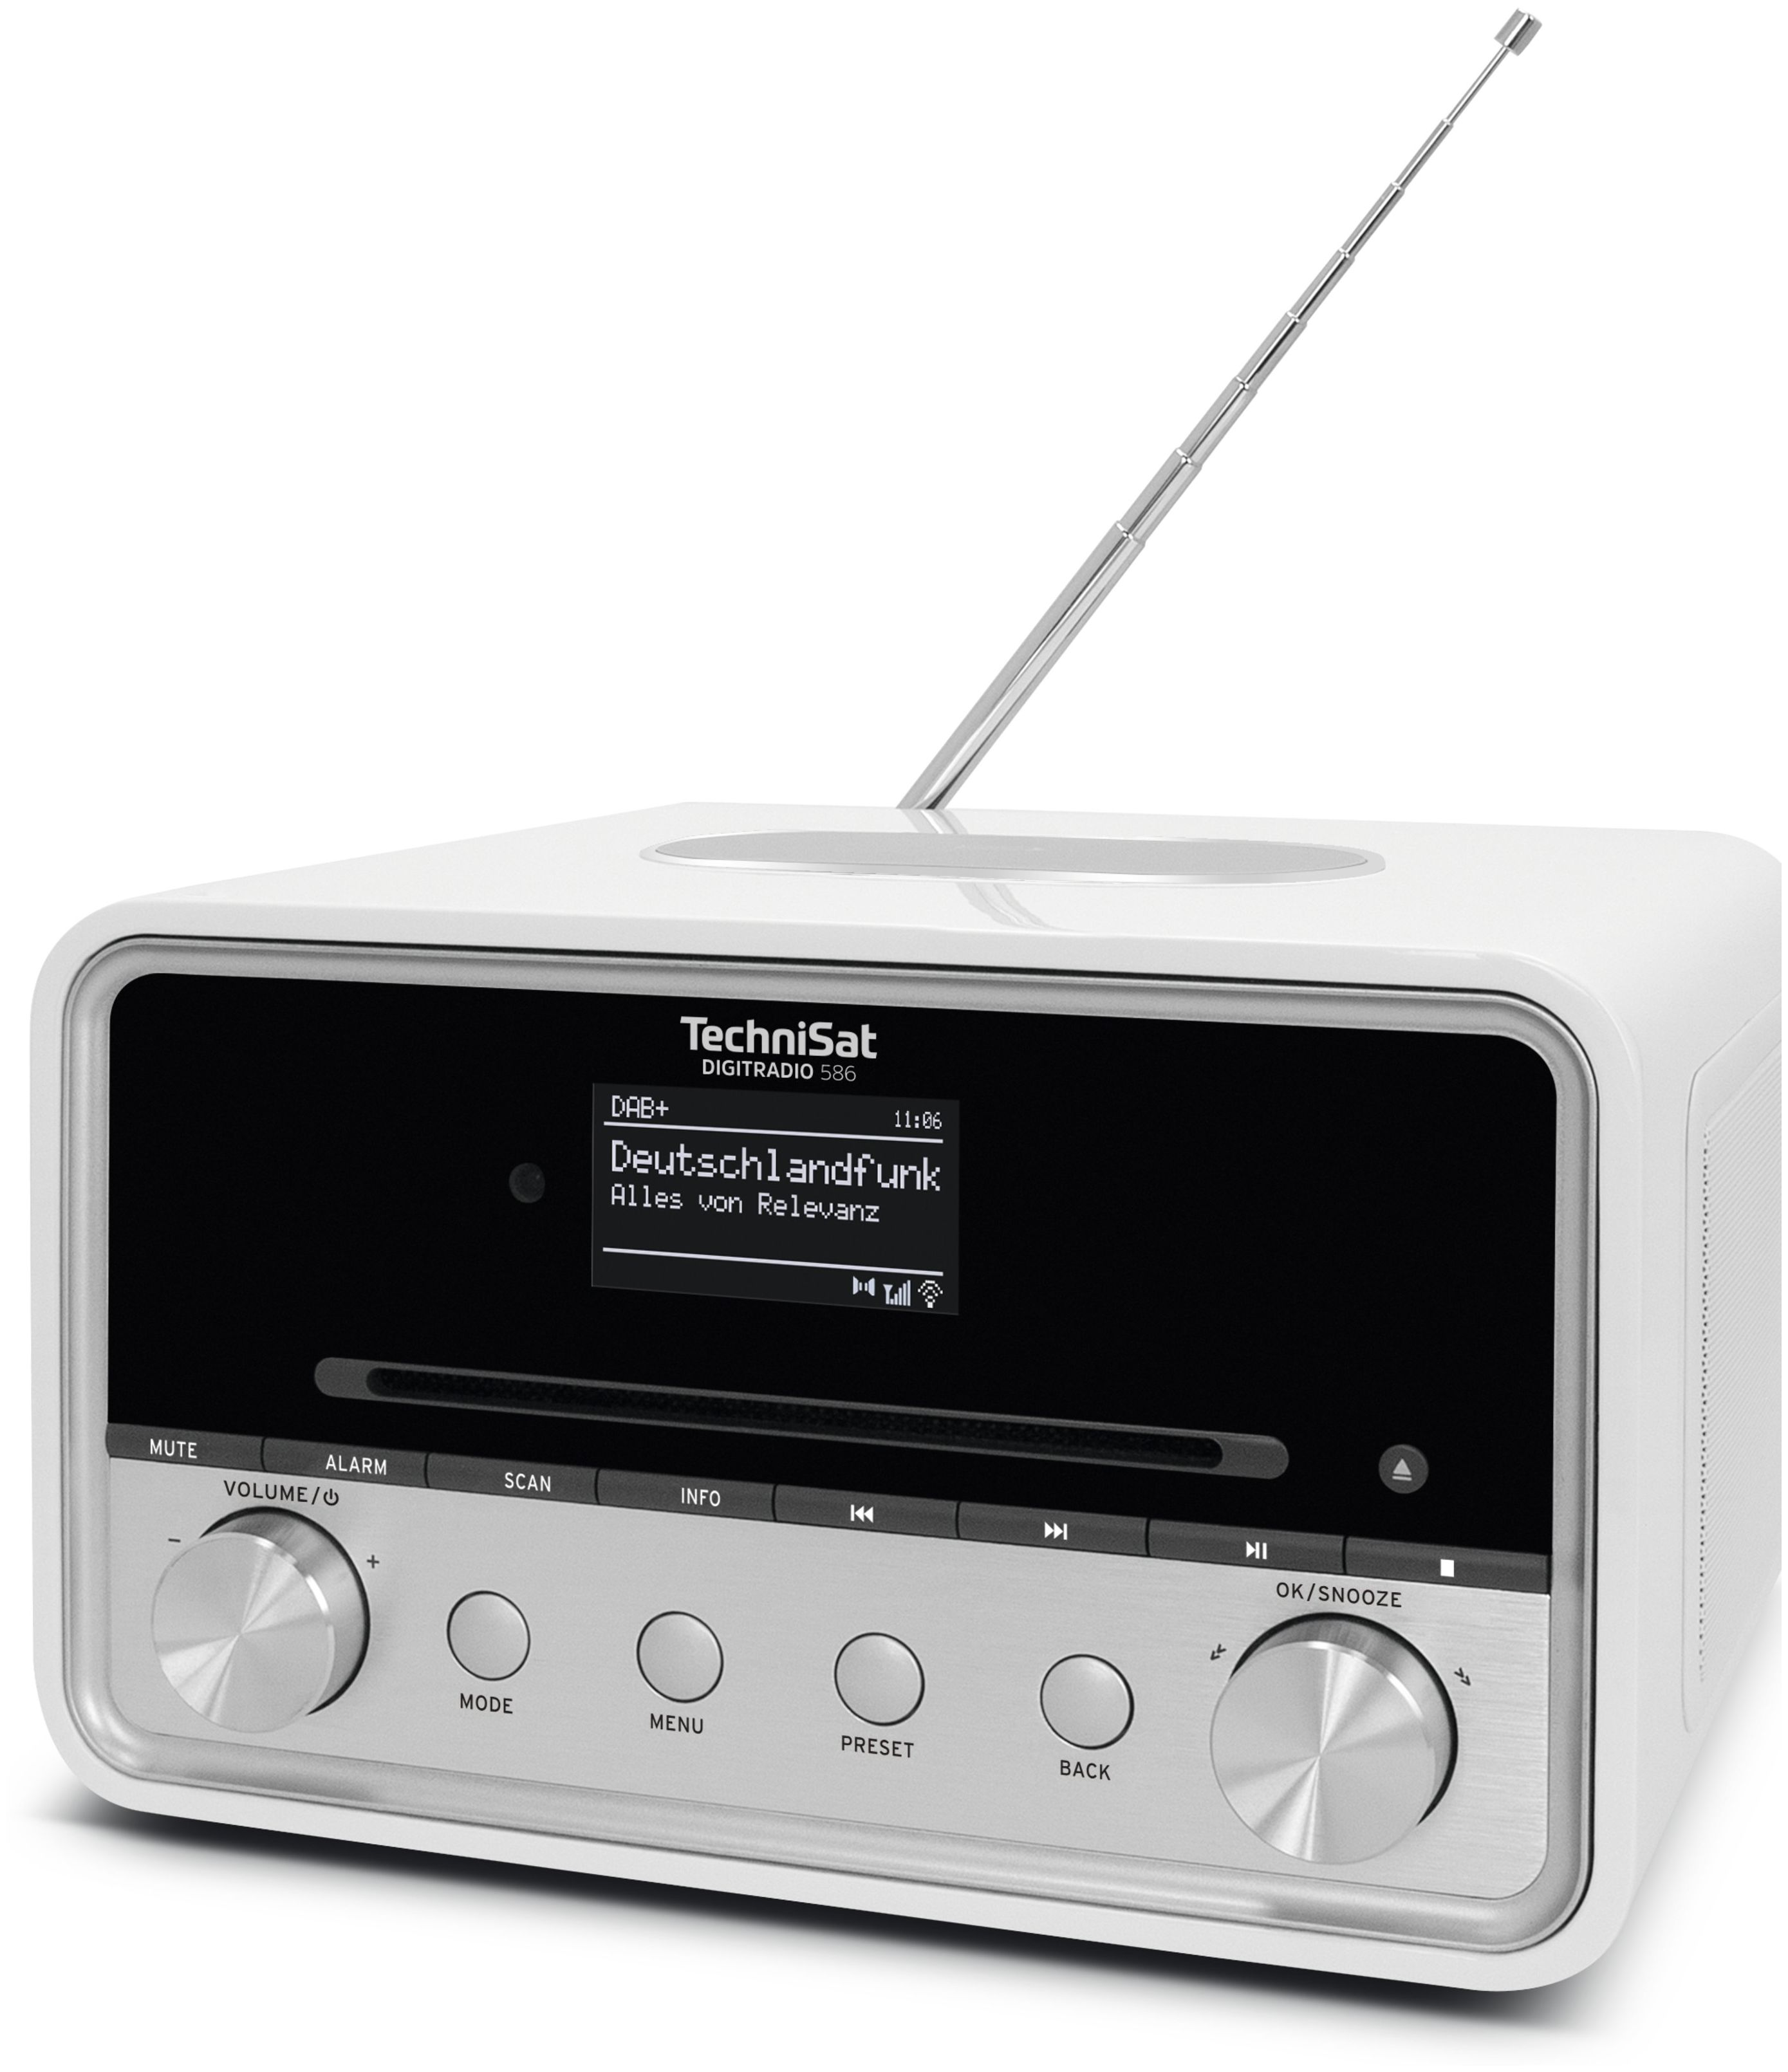 TechniSat Digitradio bei Boomstore 586